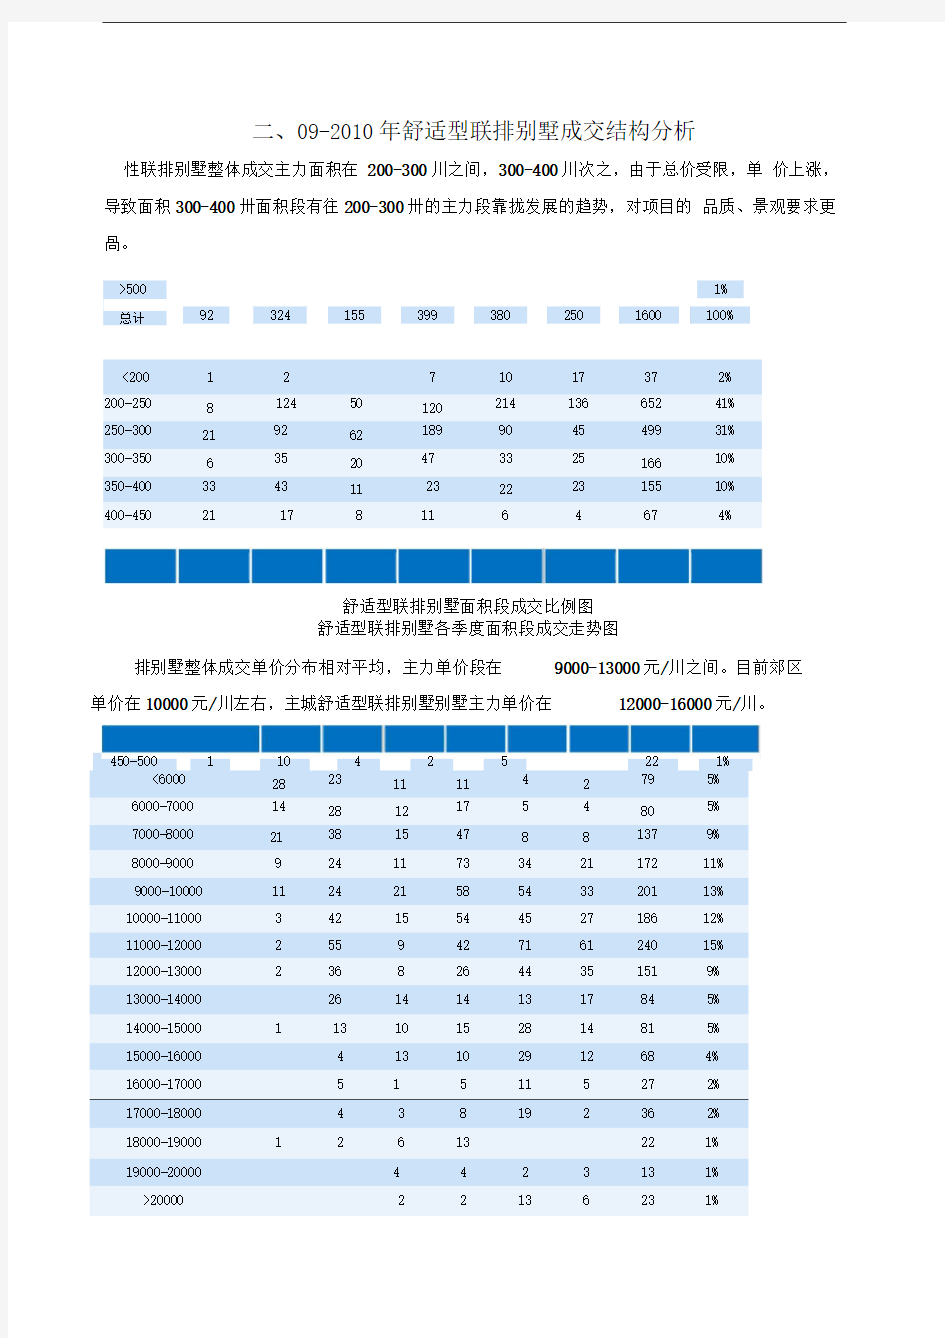 重庆市舒适型联排别墅市场研究报告